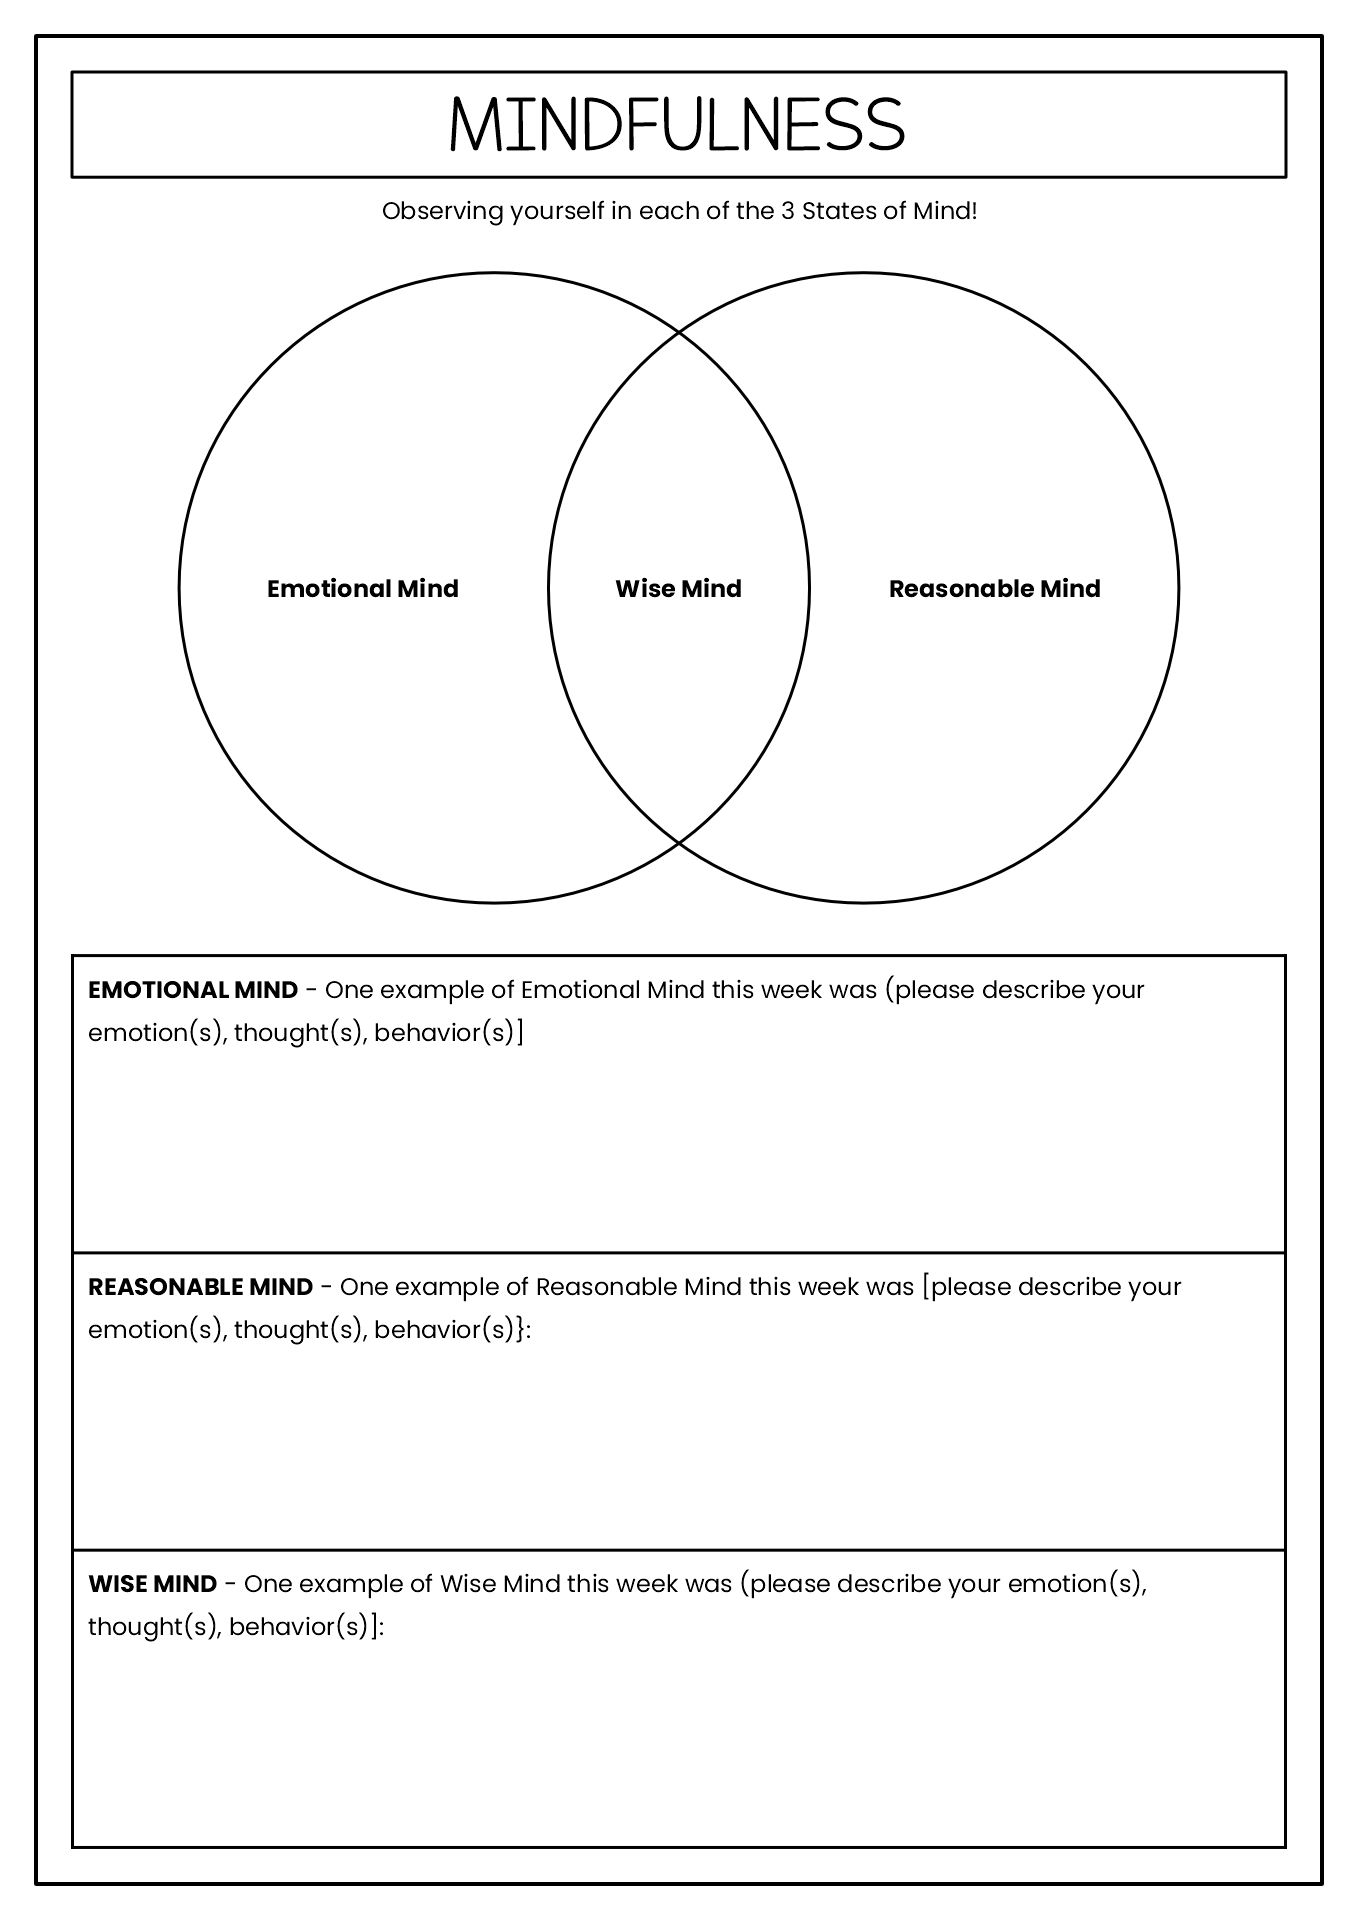 DBT Mindfulness Worksheets Image